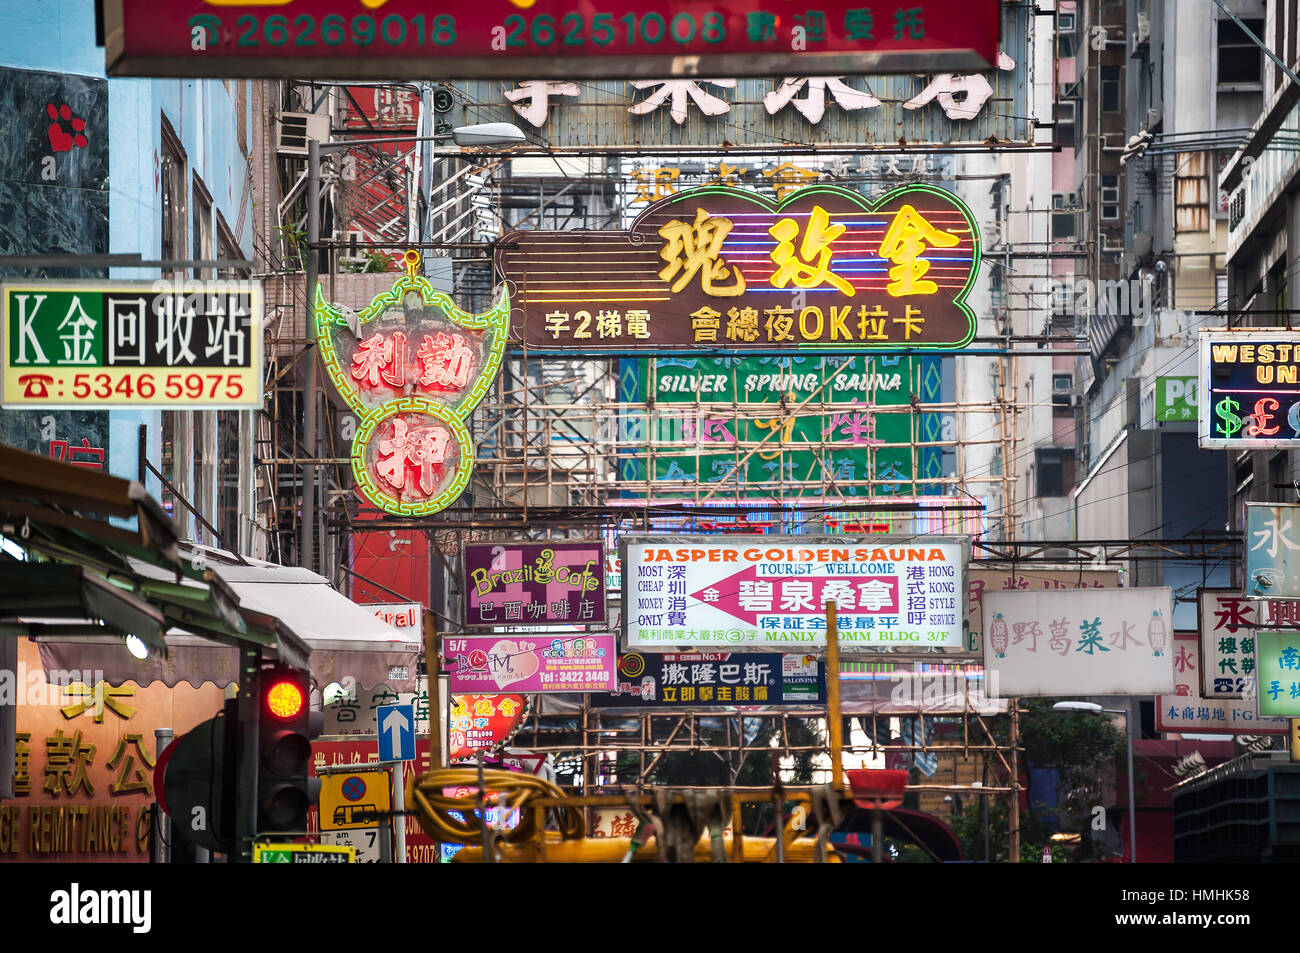 Illuminated neon signs in Kowloon, Hong Kong Stock Photo